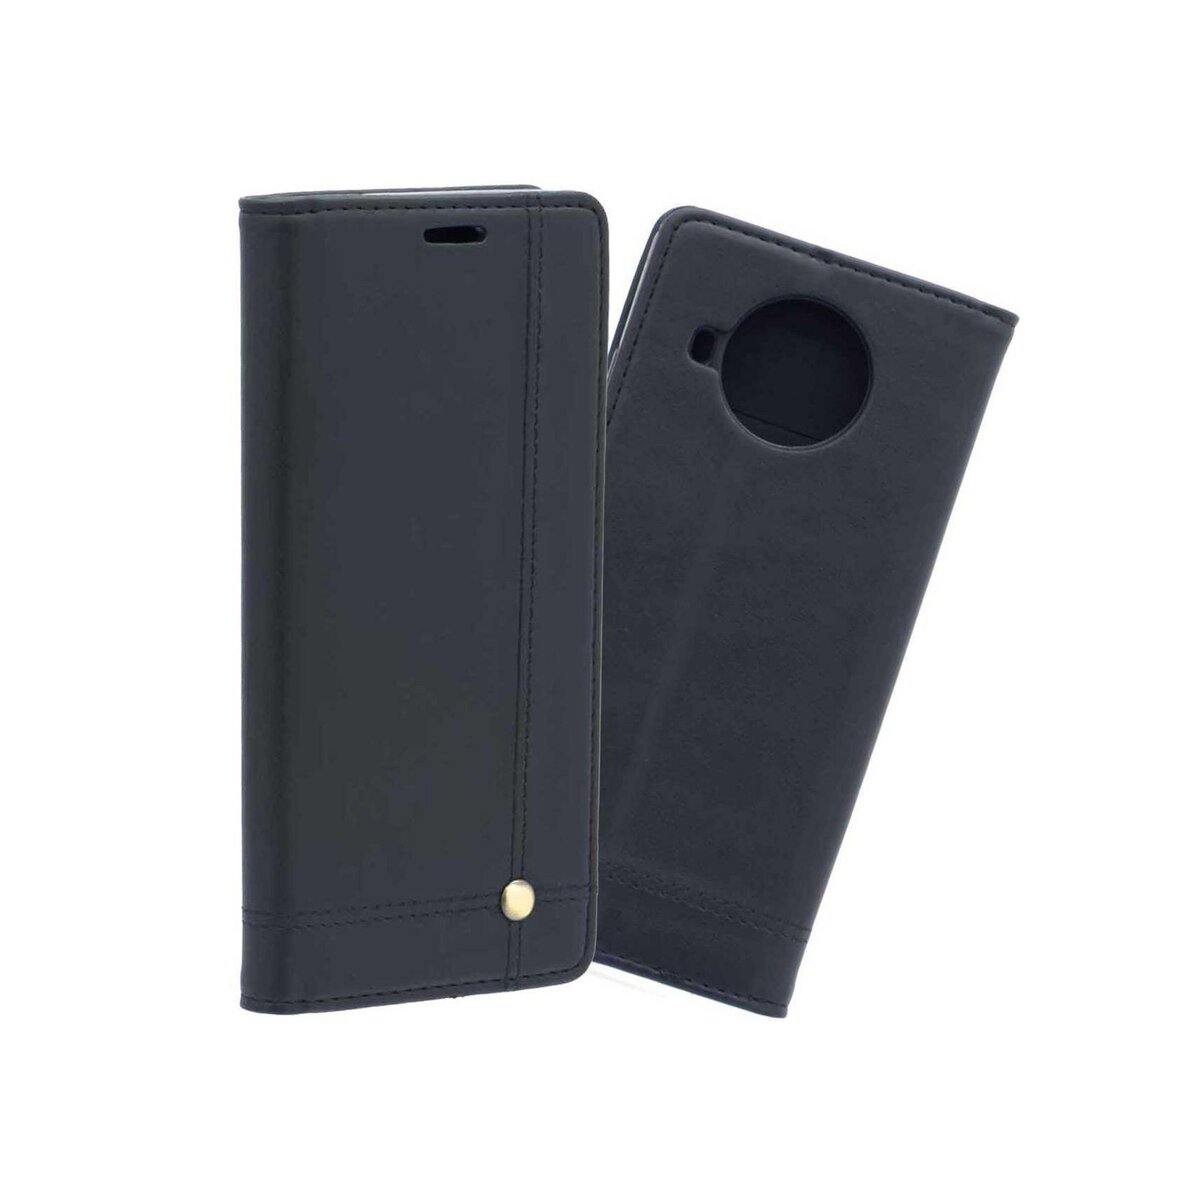 amahousse Housse noire Xiaomi Mi 10T Lite 5G folio surpiqûres clou doré